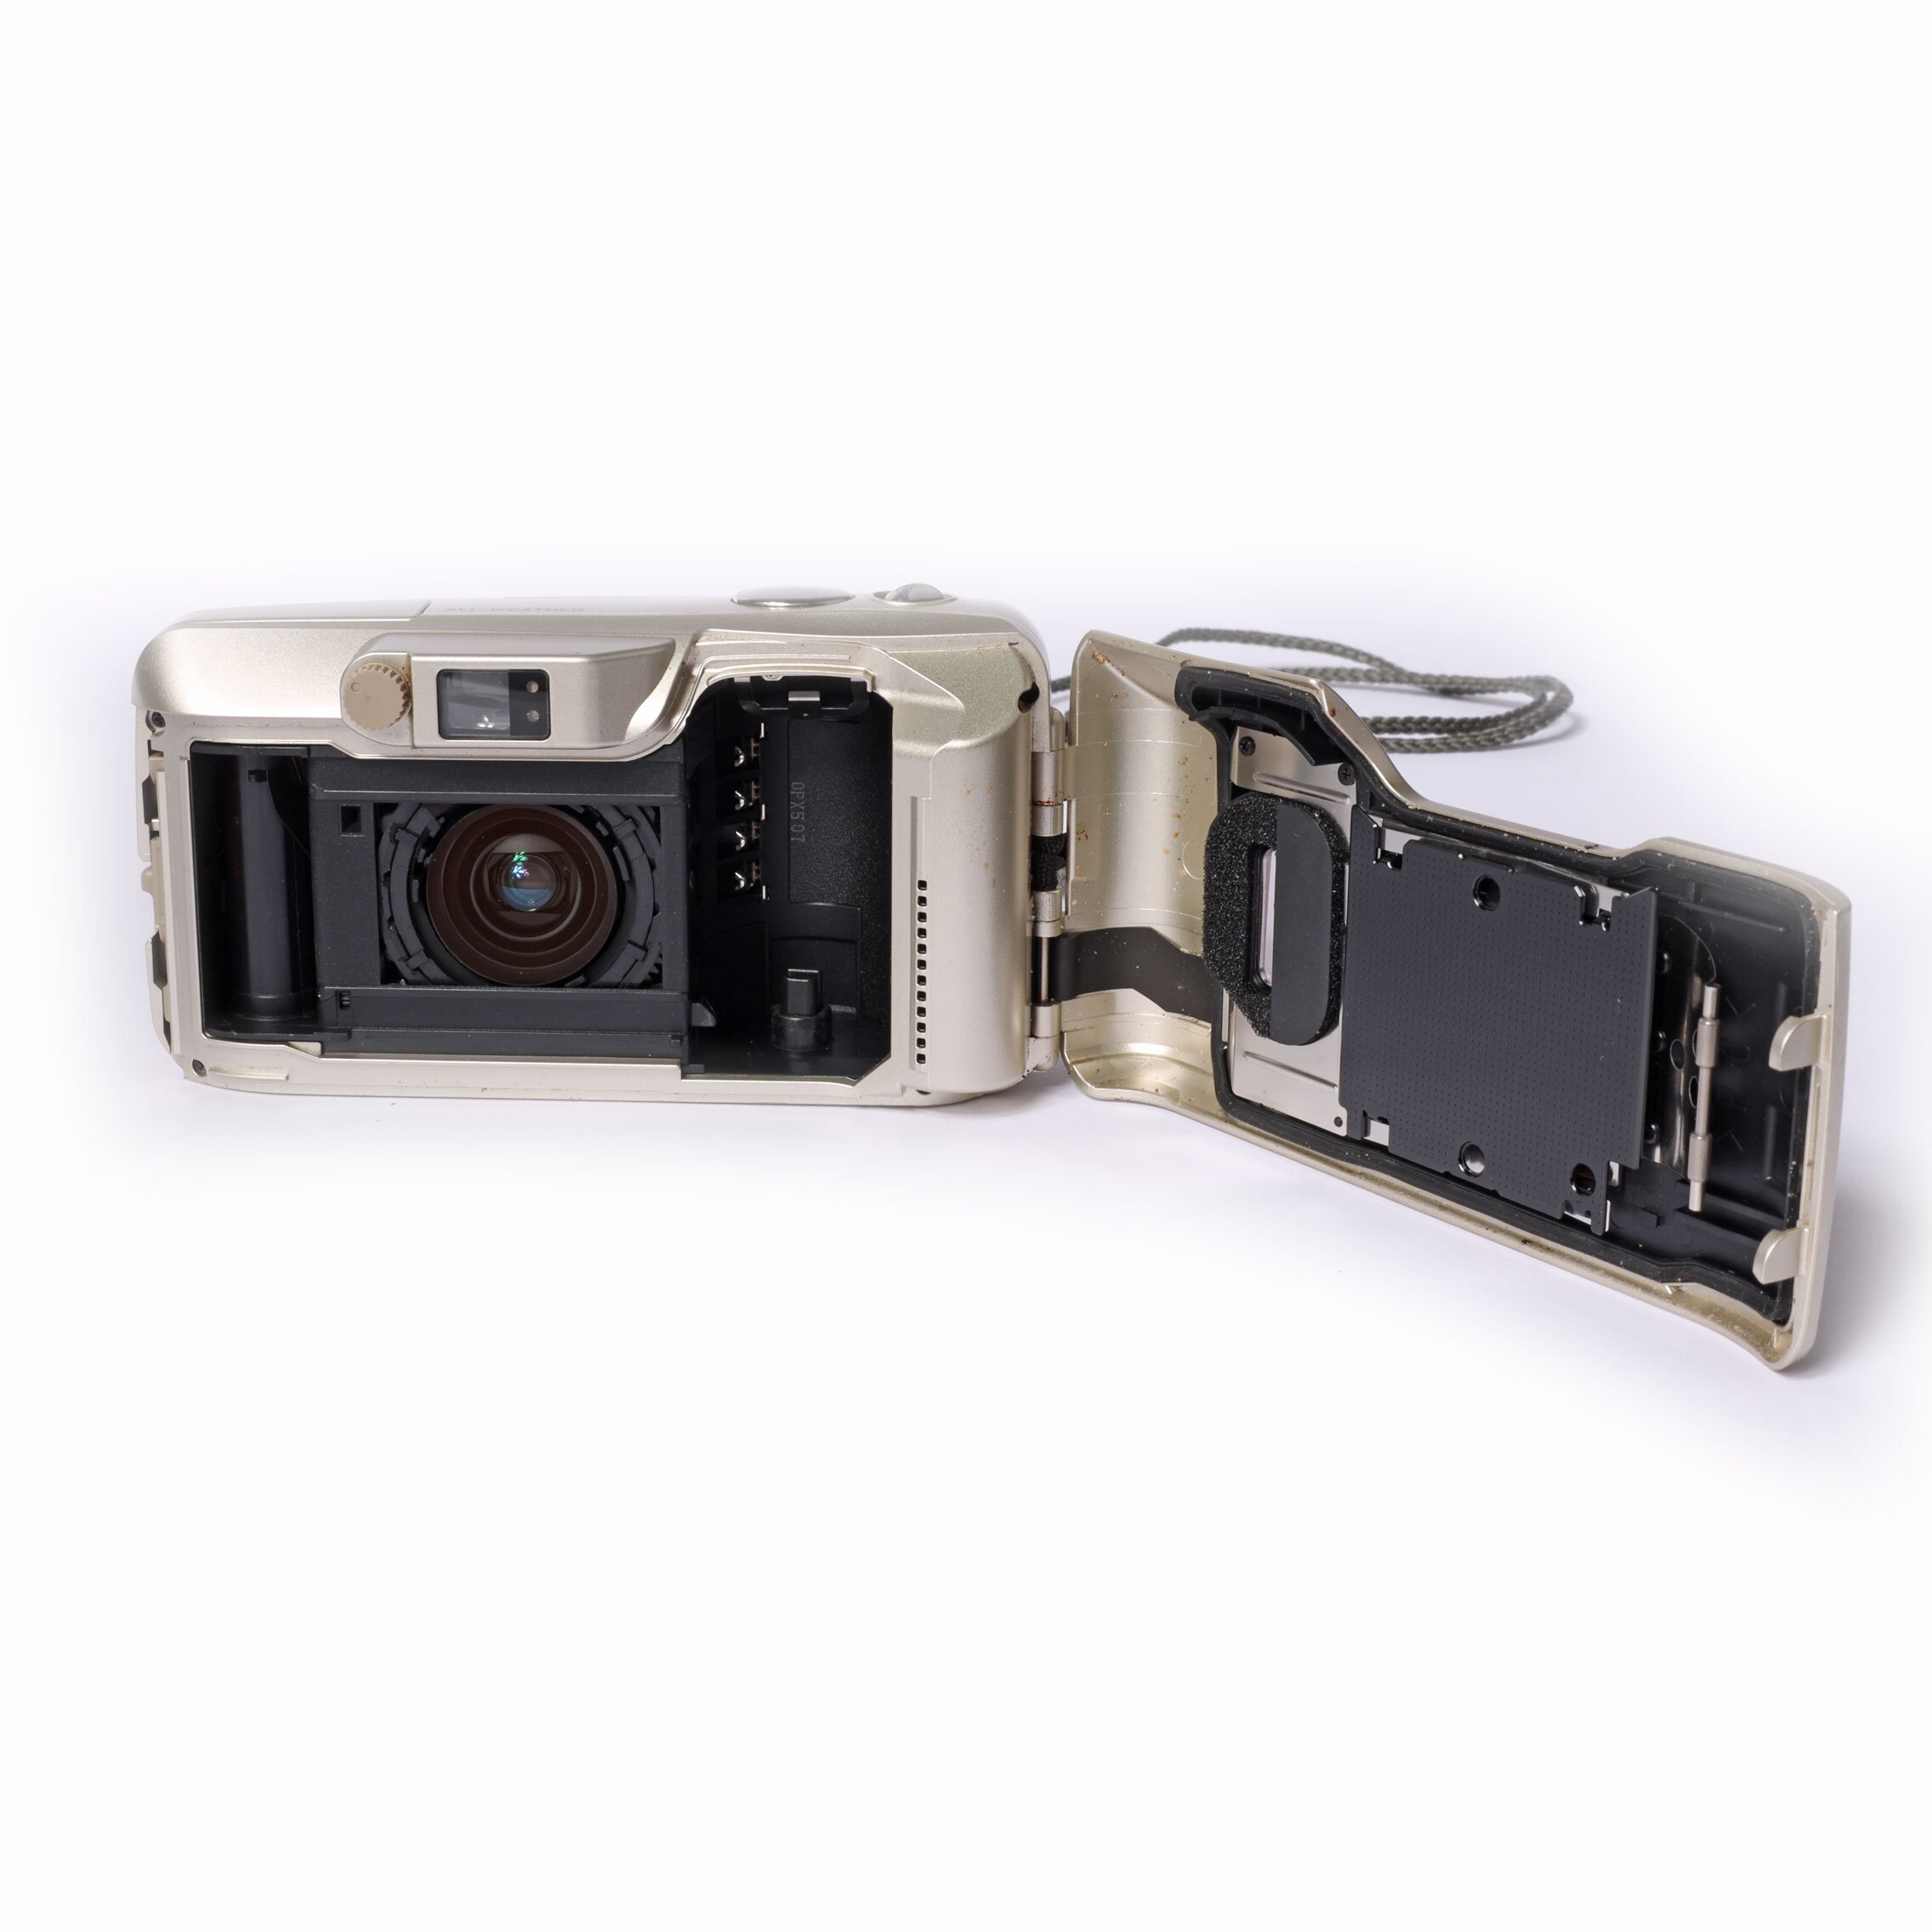 Steky Model IIIA Miniature Spy Camera 16mm film